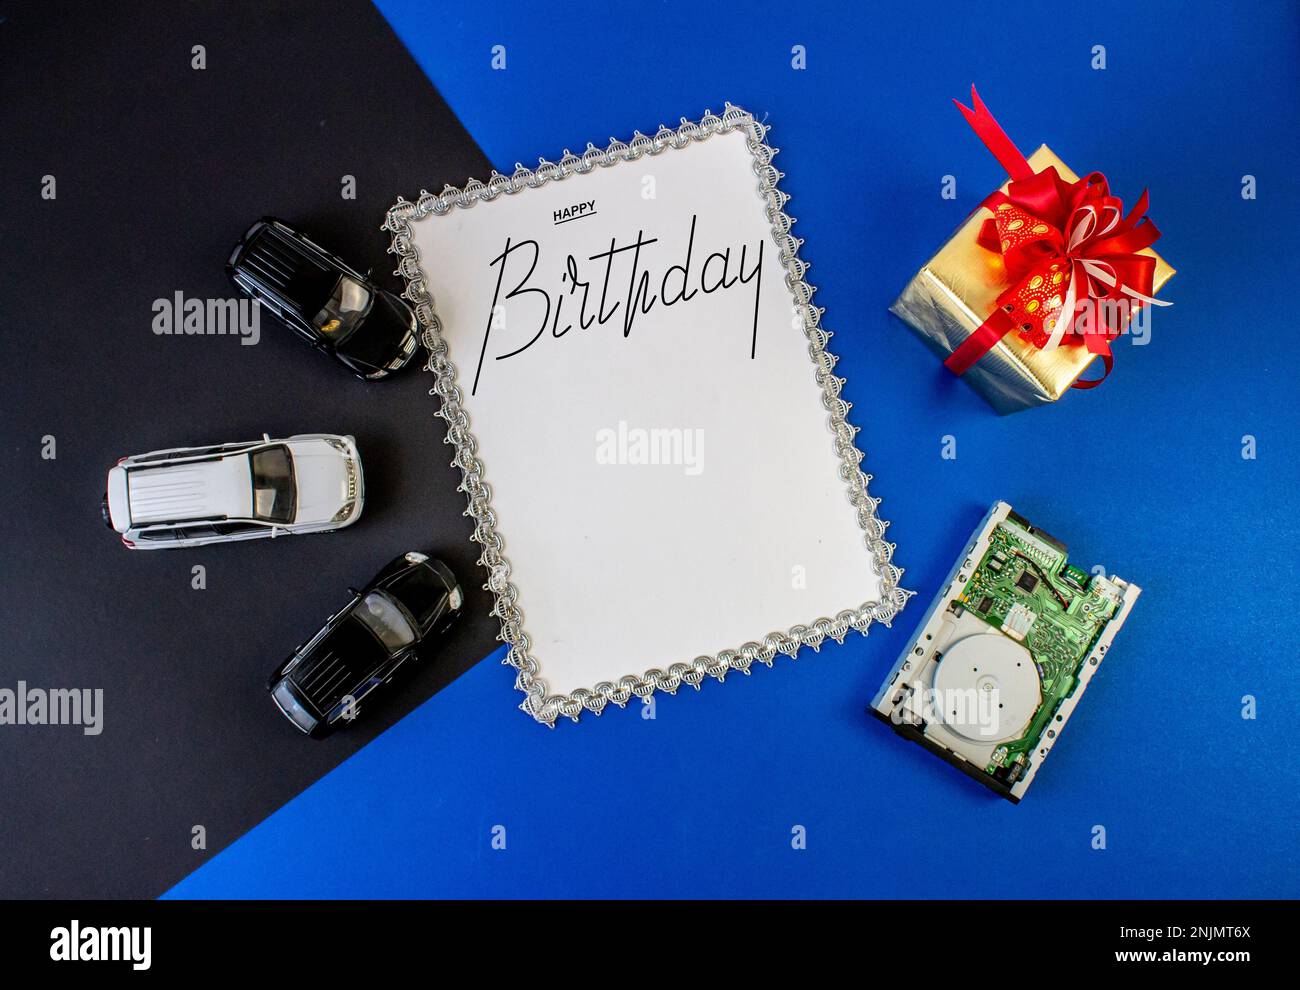 Cartolina , Internet banner , piatto con un saluto di compleanno, con l'iscrizione - Buon compleanno. Per uomini o ragazzi. Foto Stock